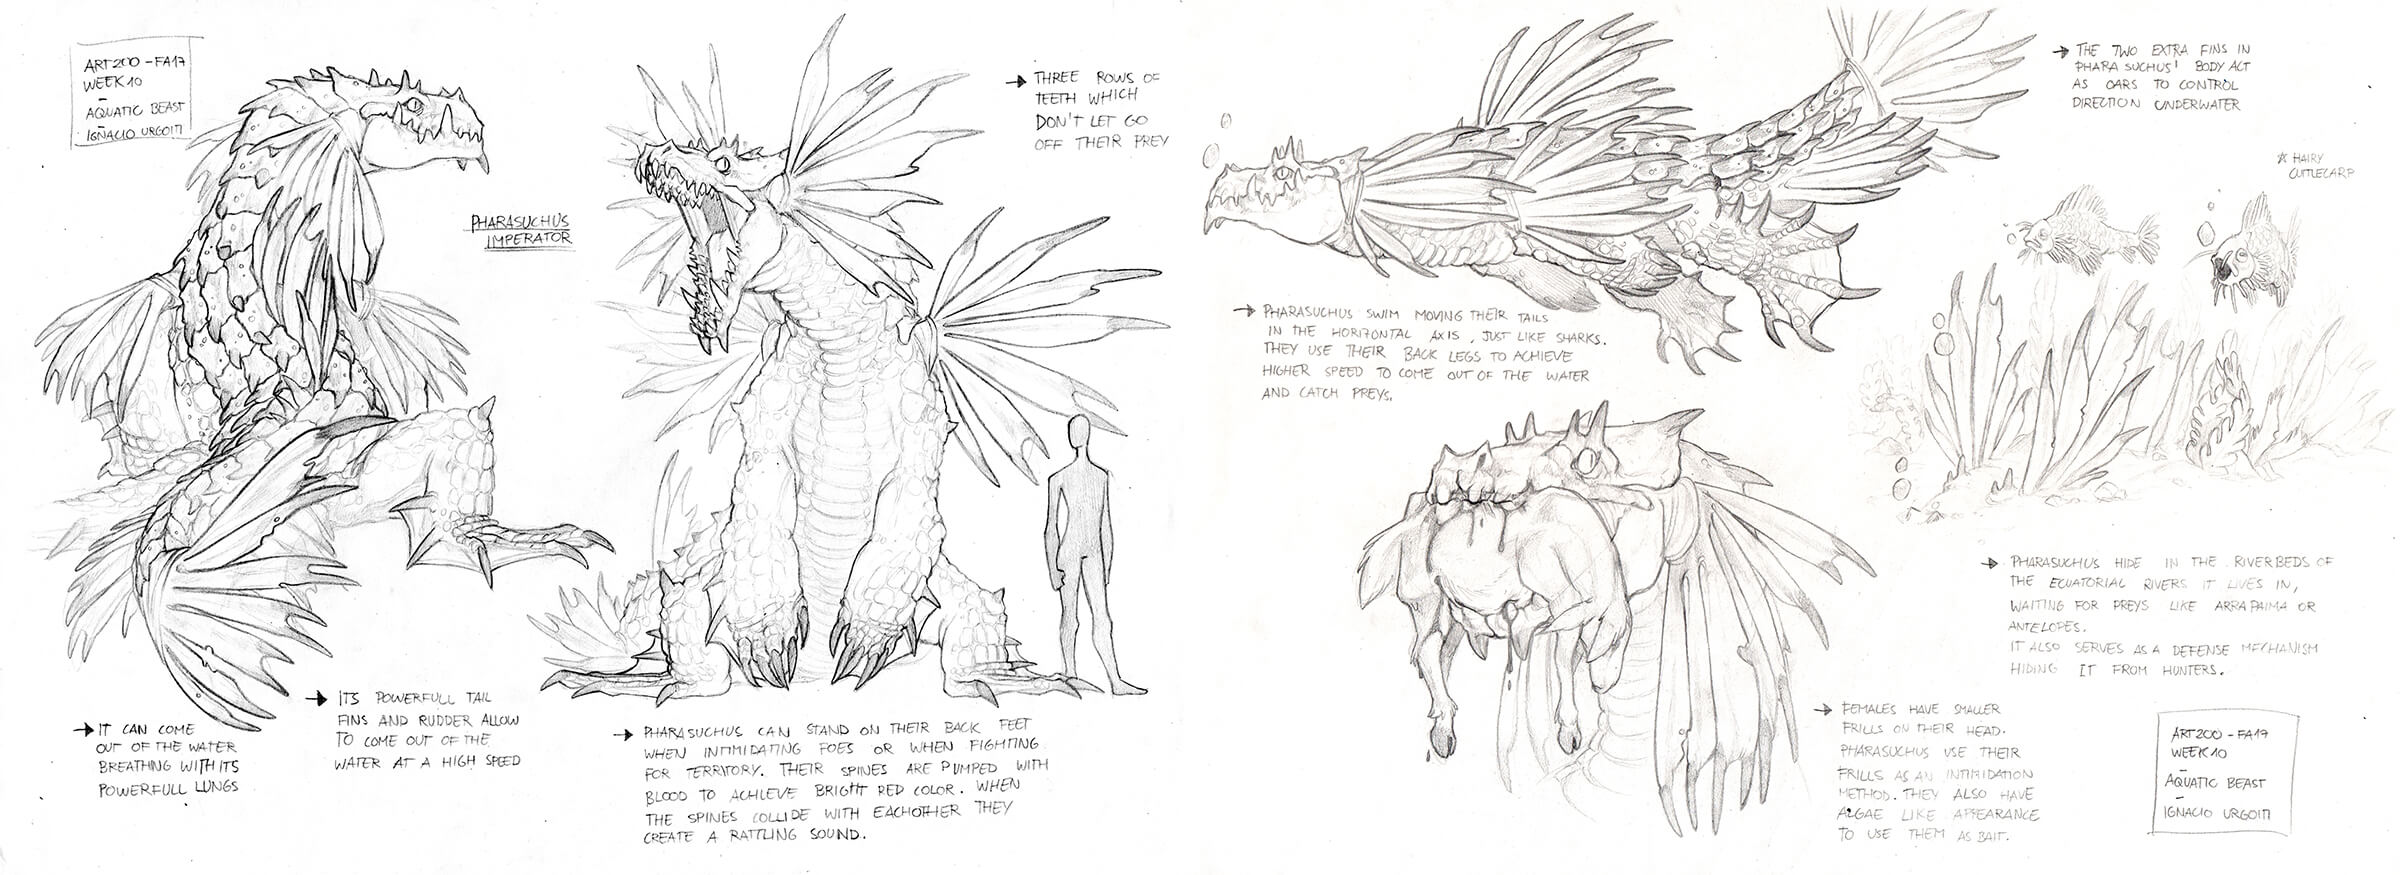 Bocetos conceptuales en blanco y negro de una criatura parecida a un dragón volando, de pie y comiendo un animal.